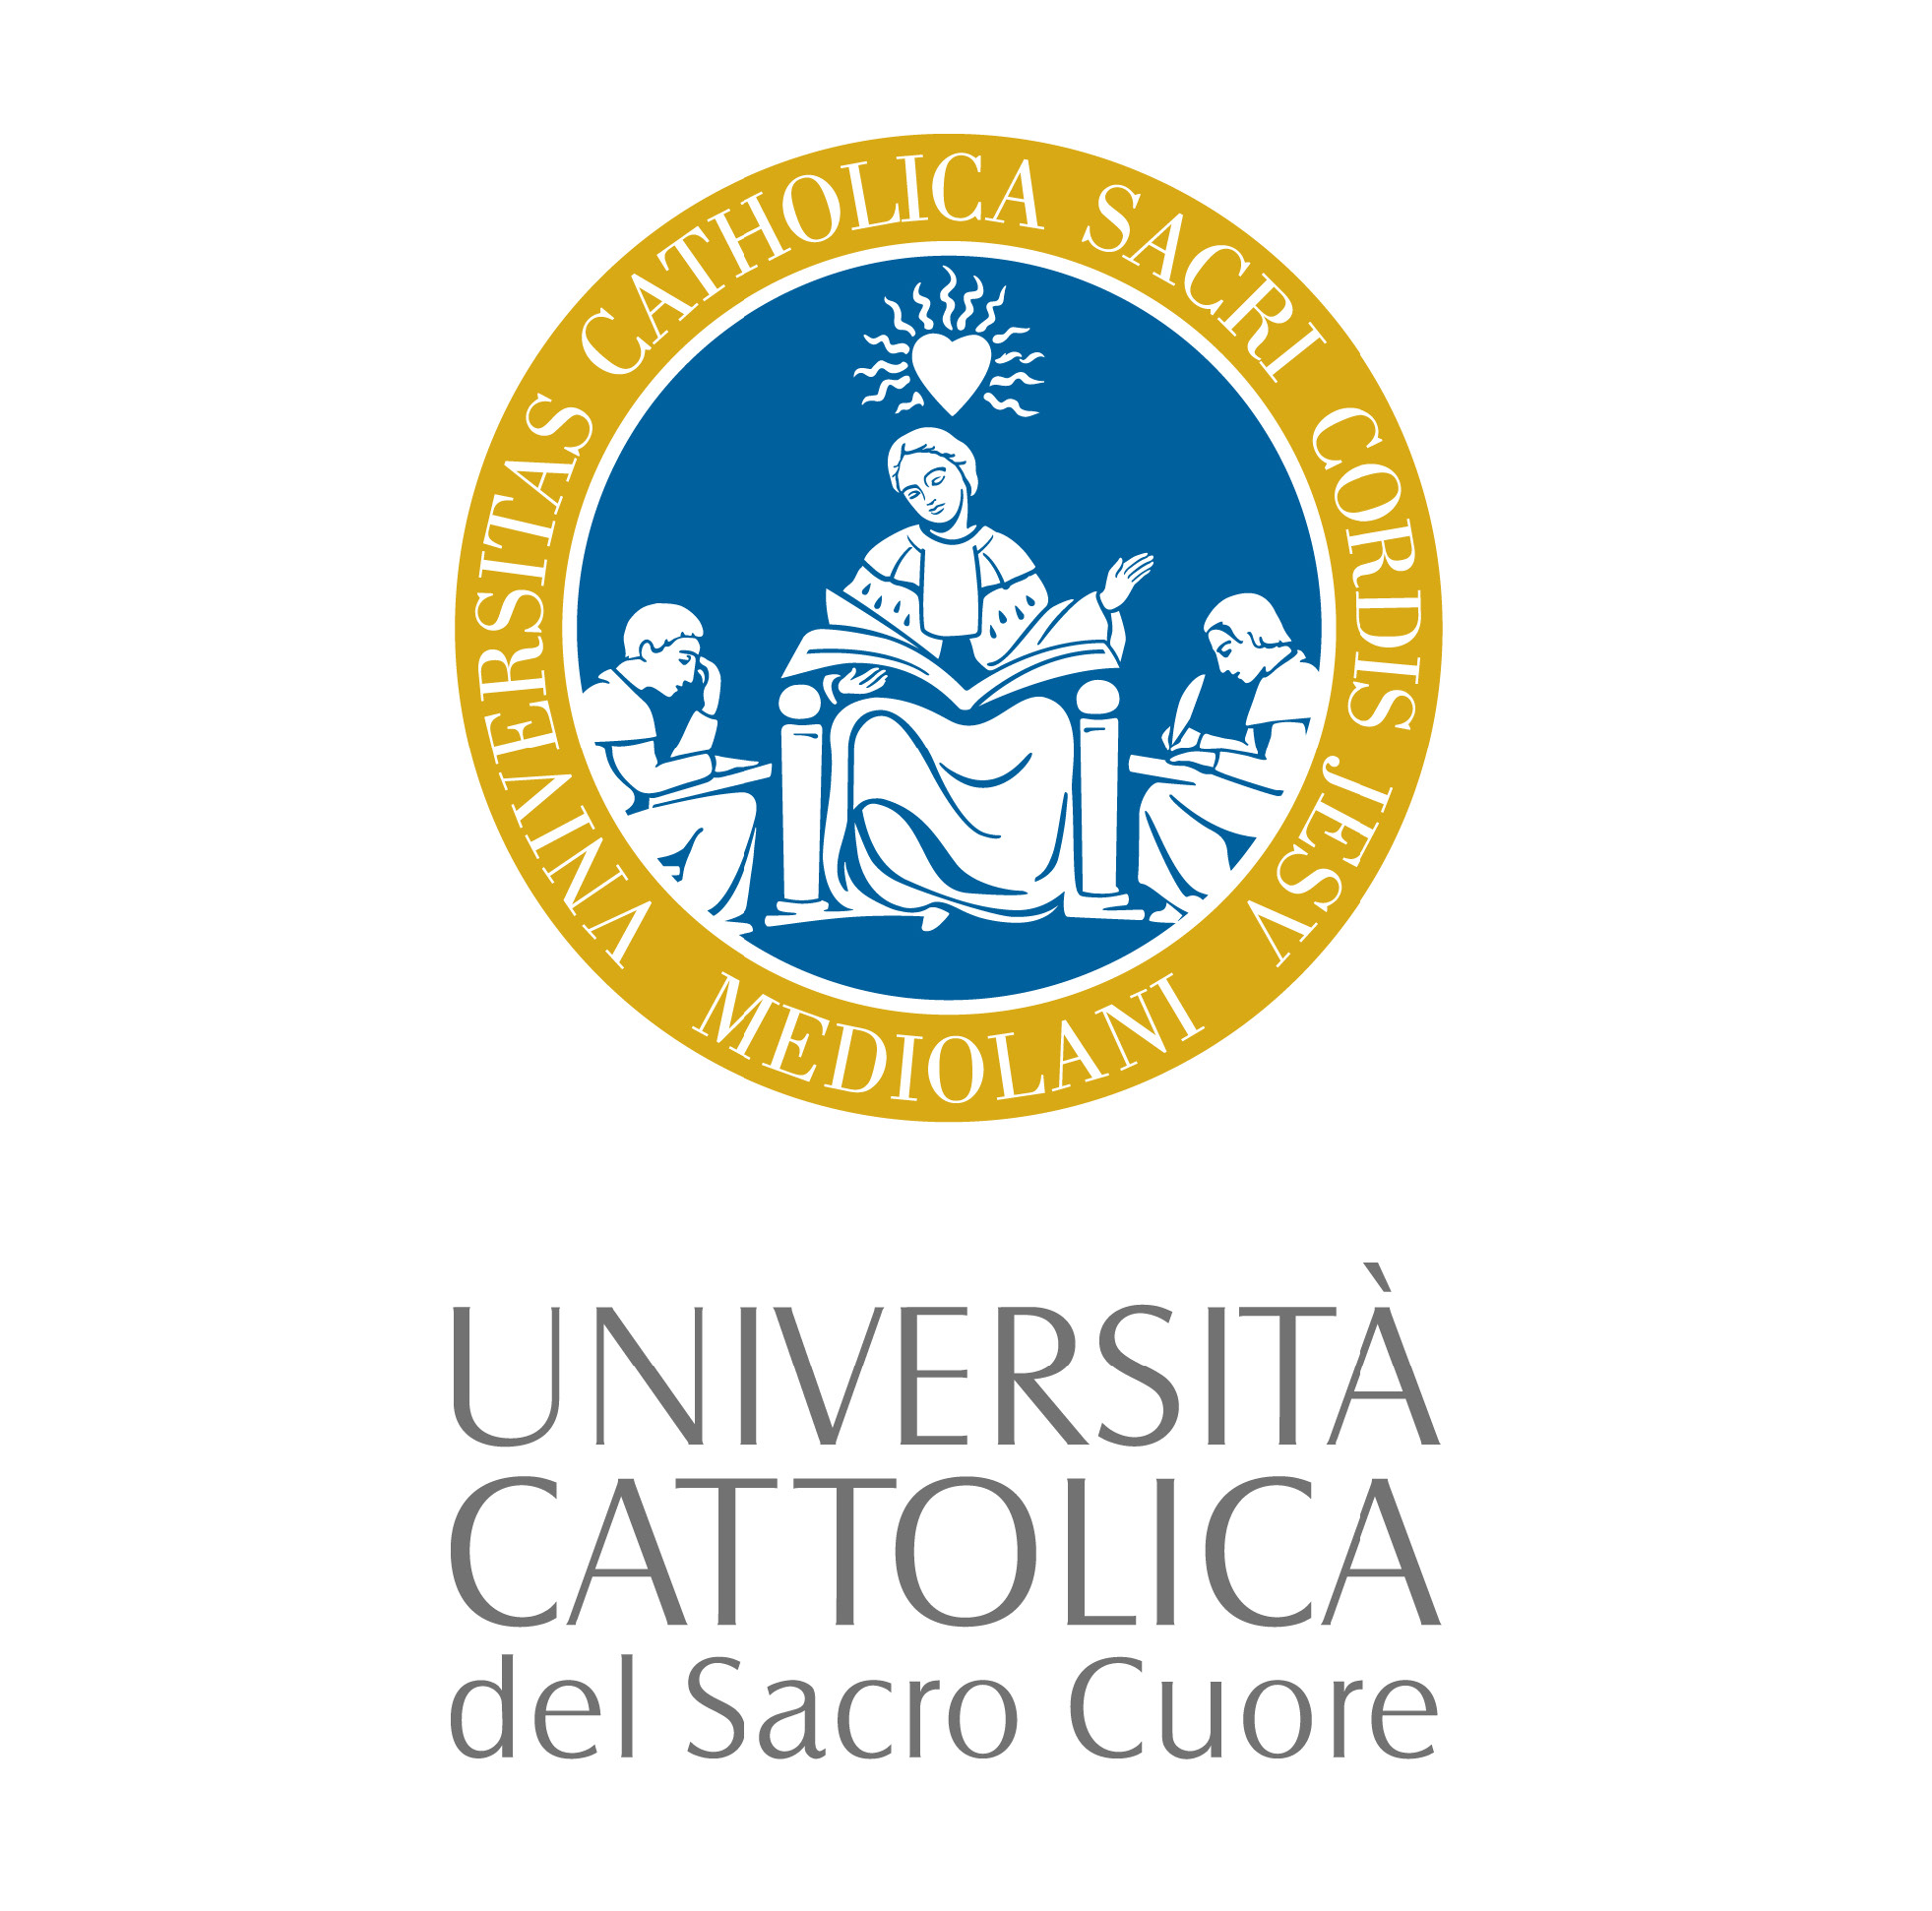 Study in Università Cattolica del Sacro Cuore with Scholarship